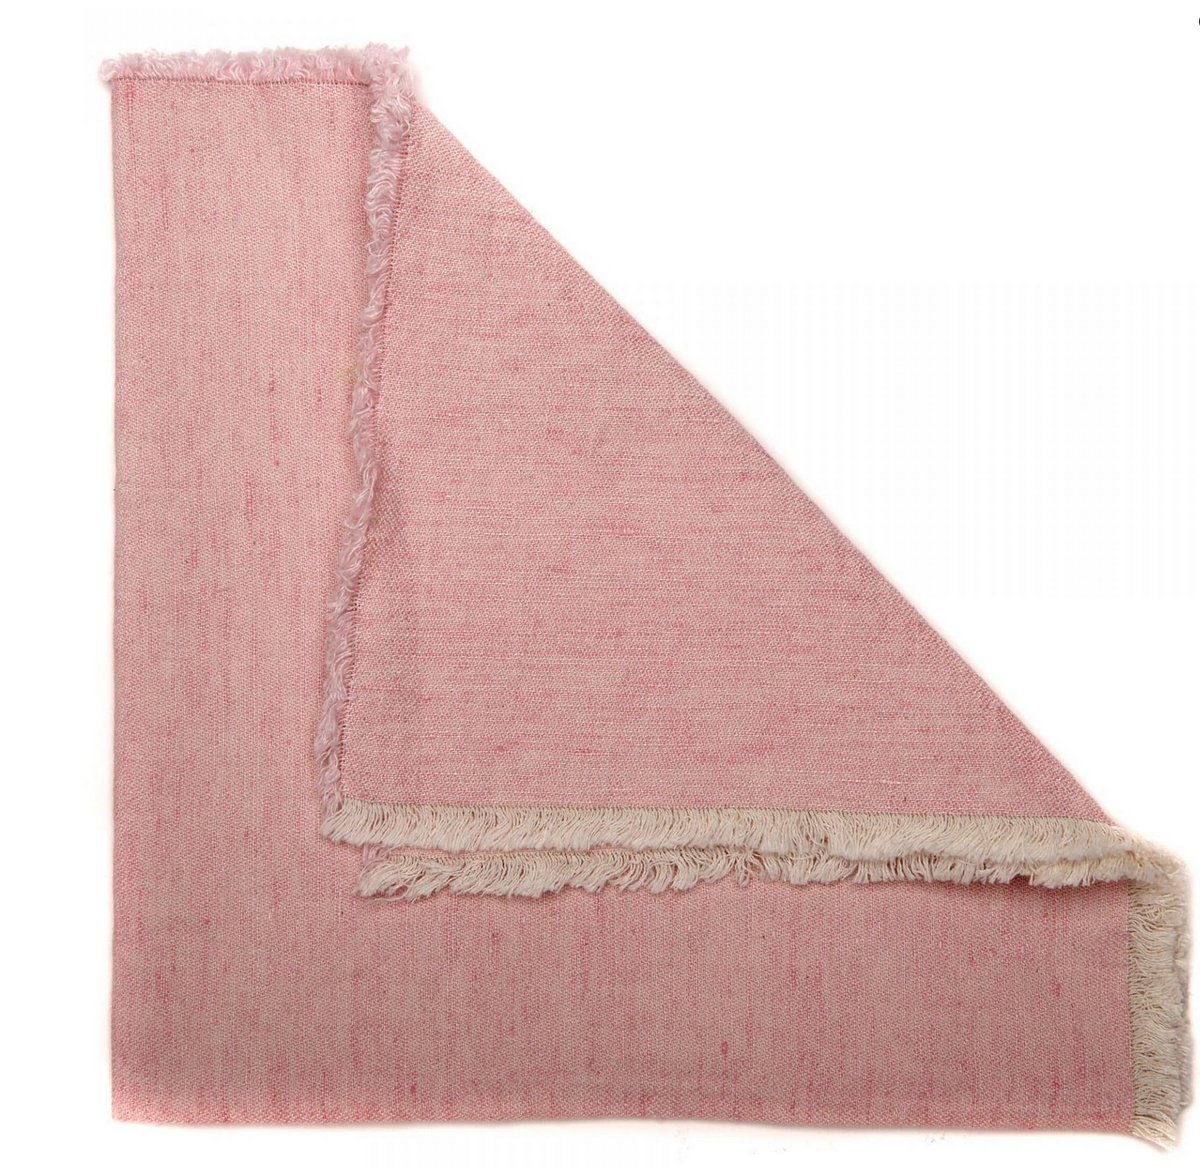 Woven Washed Fringe Napkin Pink Set of 4